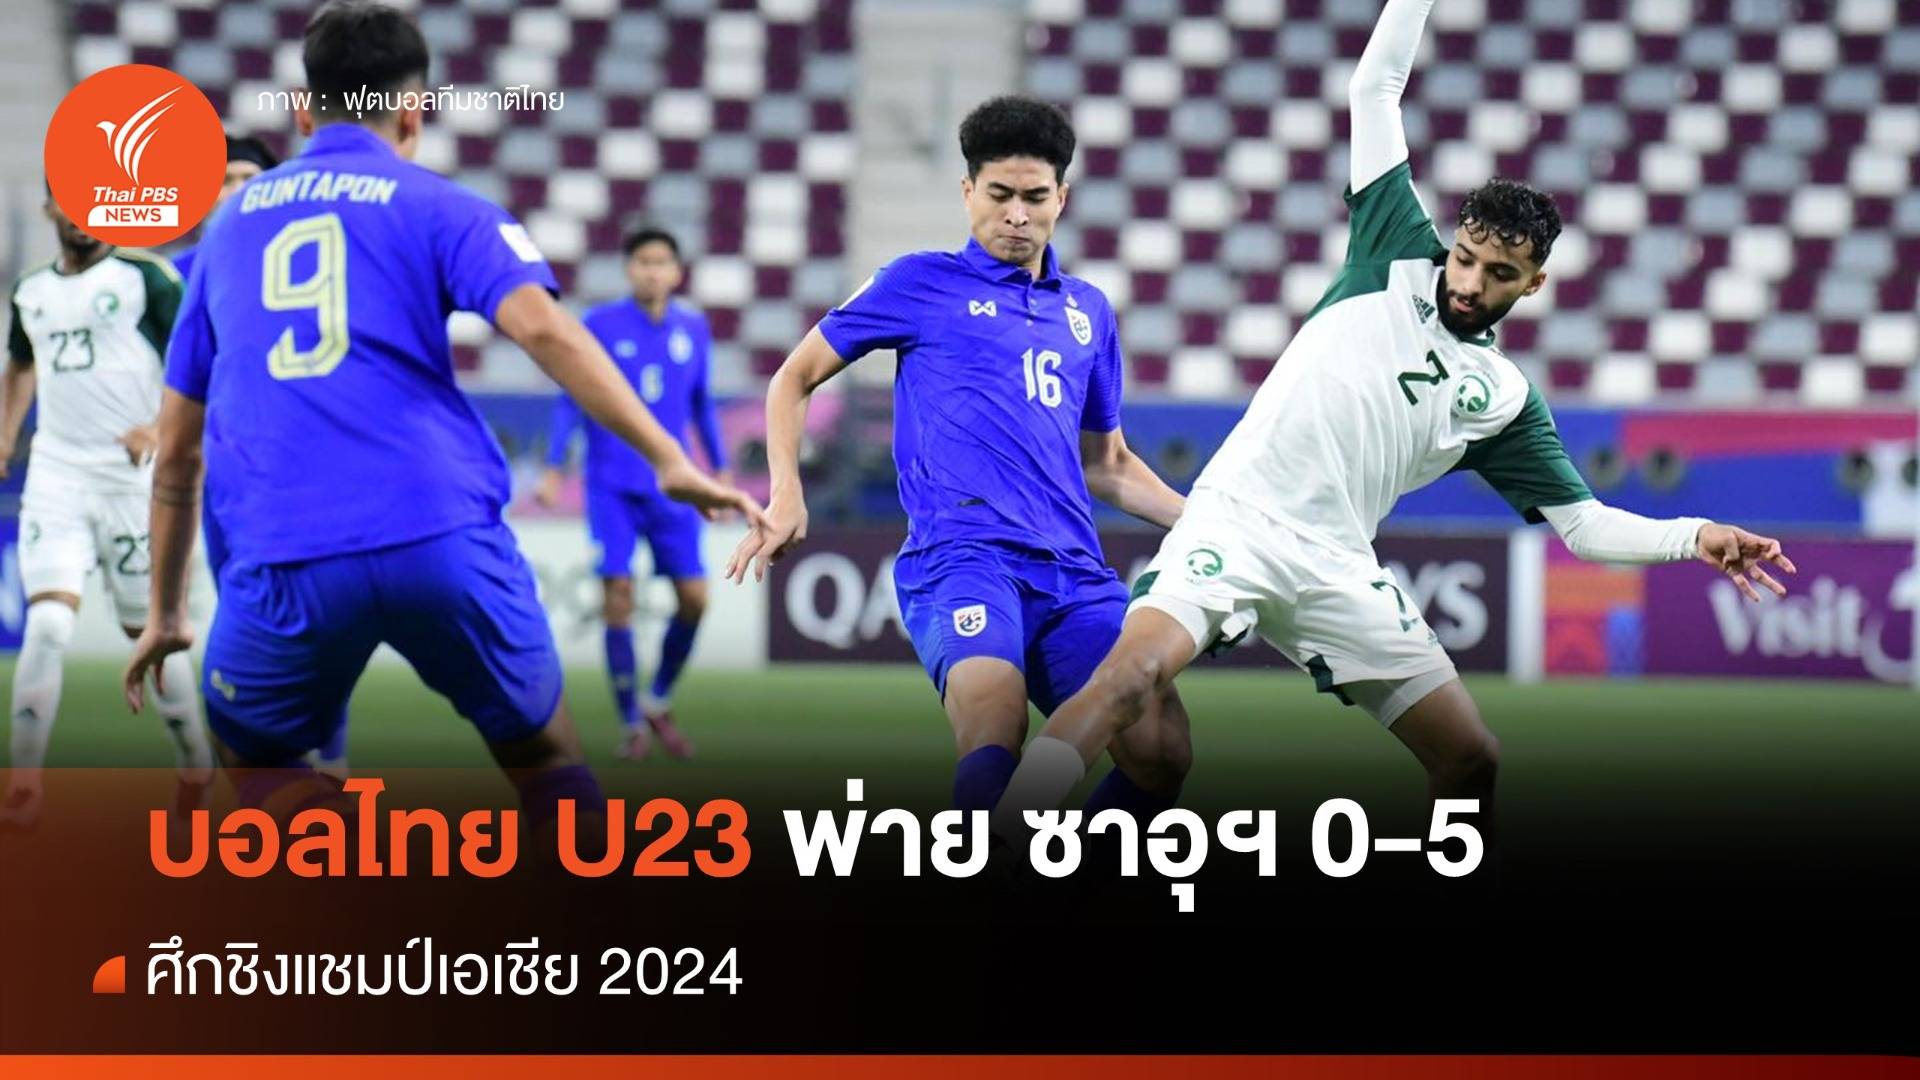 ทีมชาติไทย U23 พ่าย ซาอุดีอาระเบีย 0-5 ศึกชิงแชมป์เอเชีย 2024